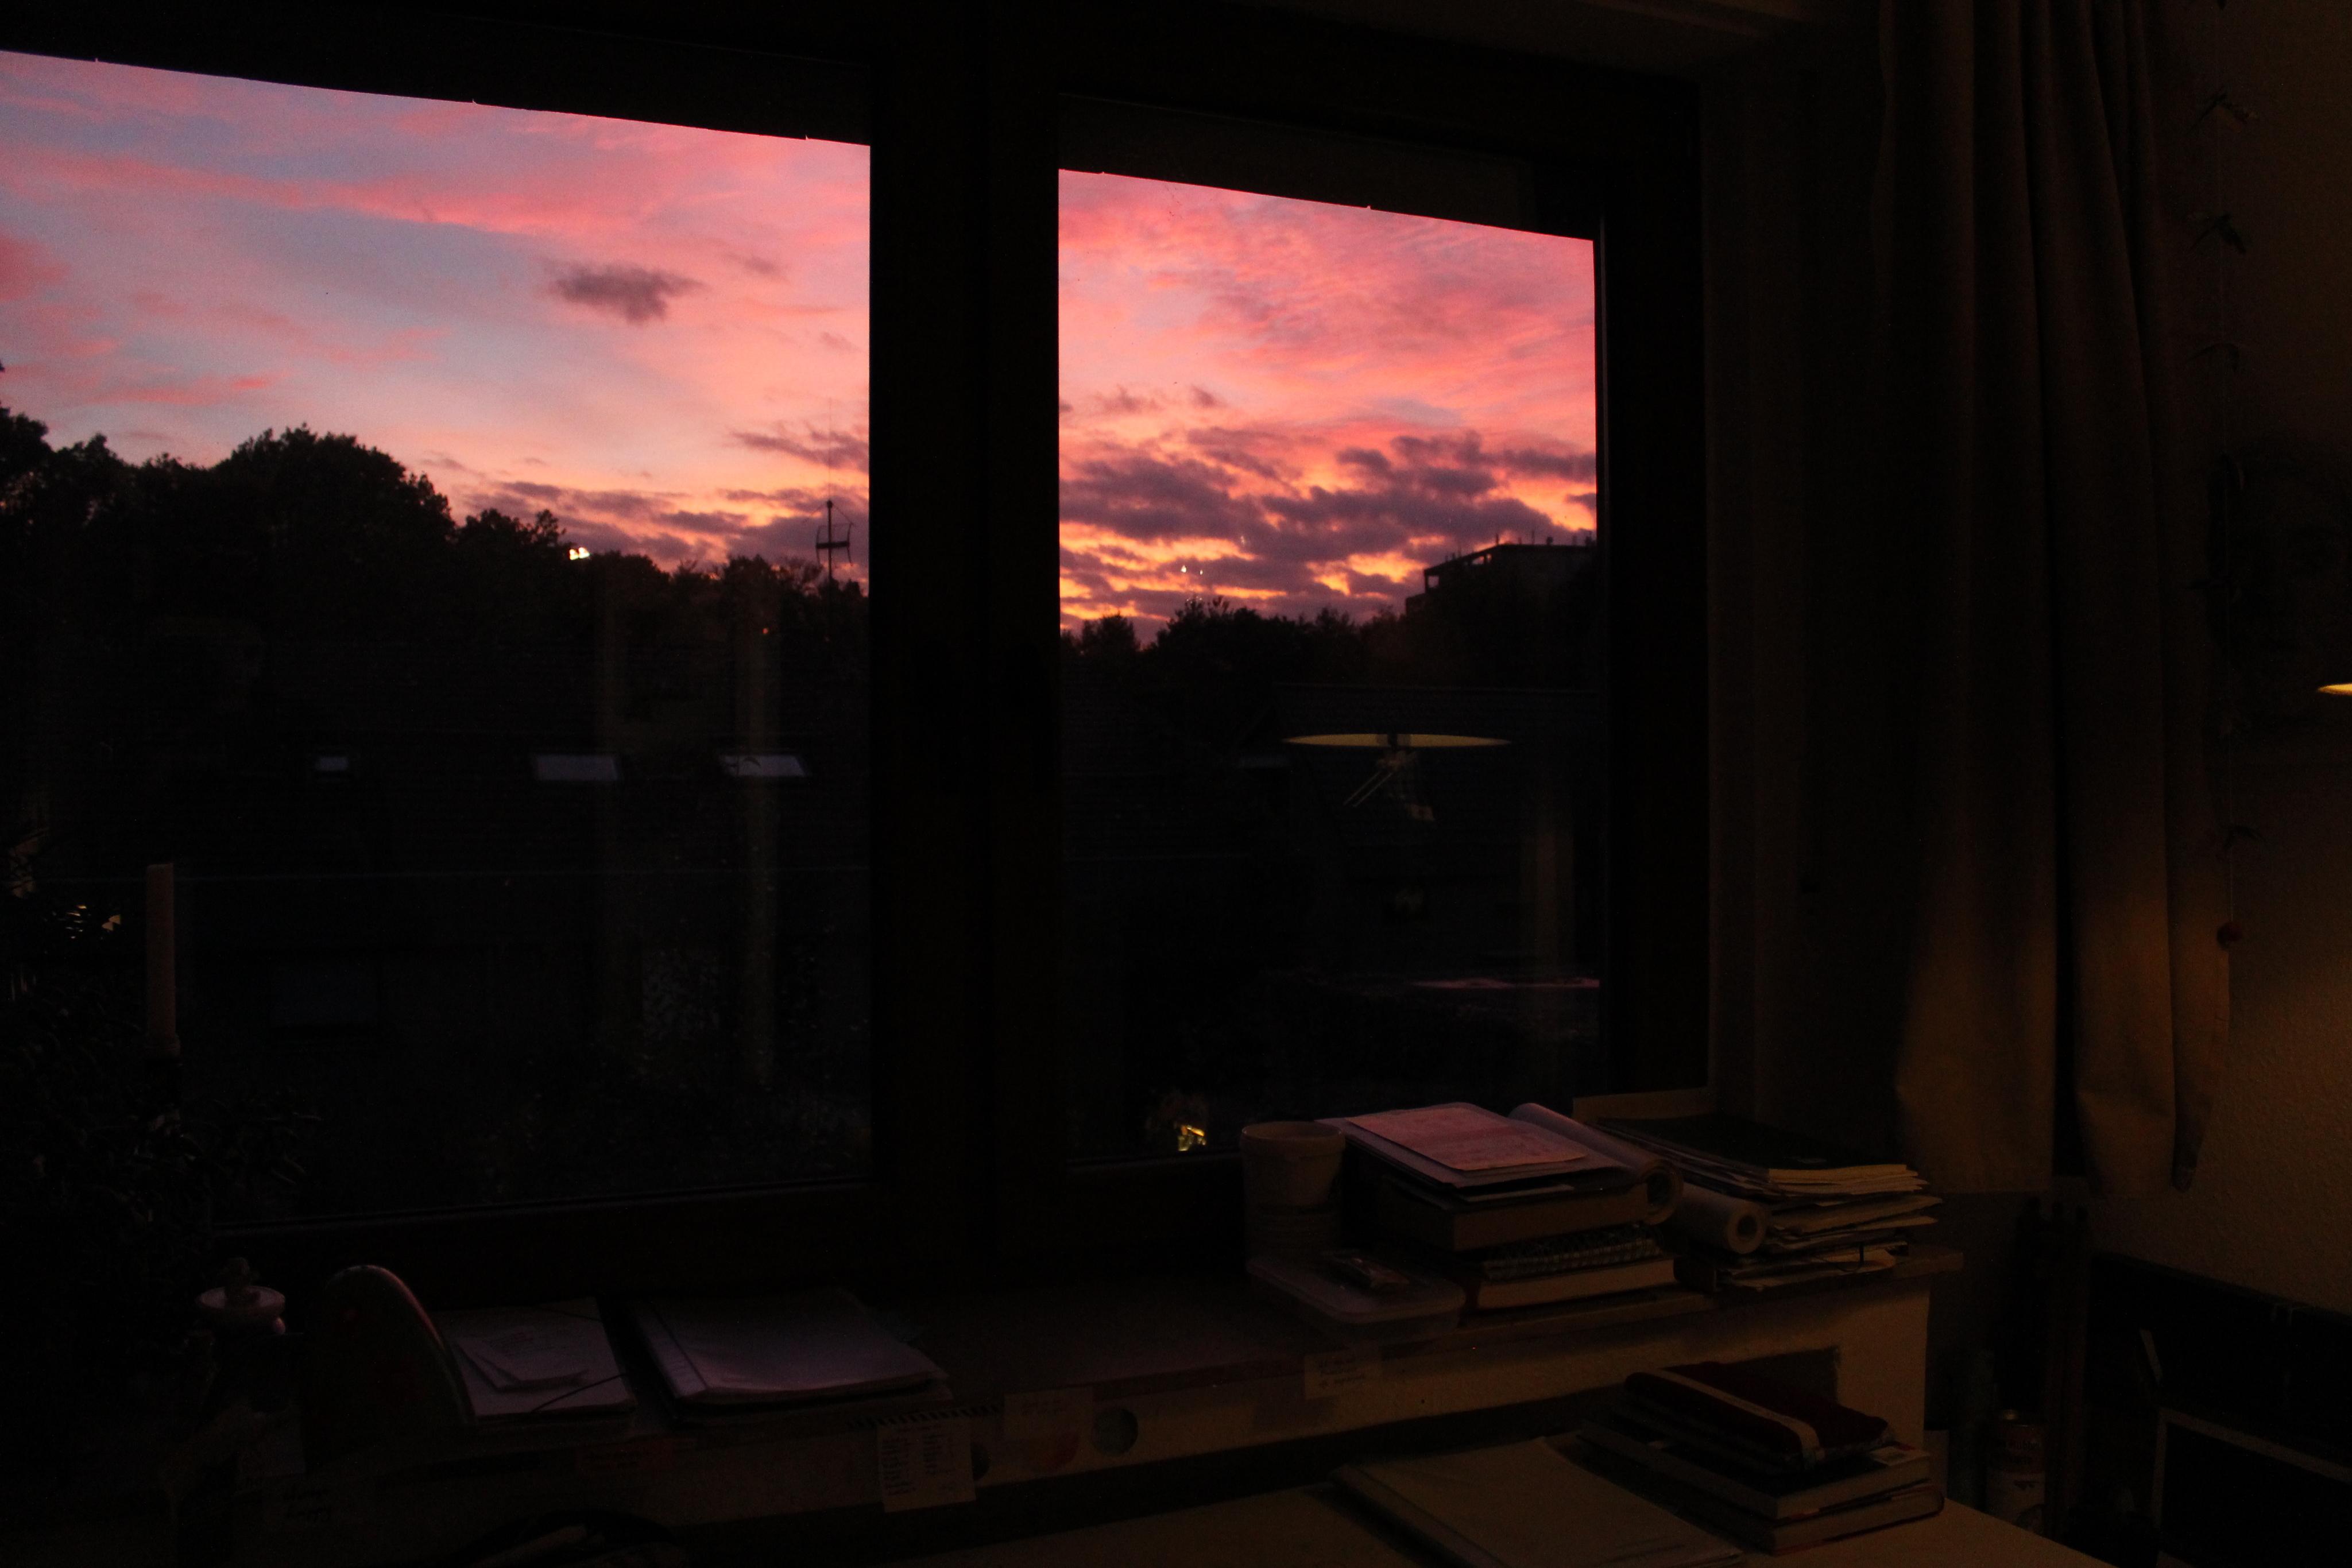 So lässt sich arbeiten...
#Arbeitszimmer #Sonnenuntergang #DieEngelbacken 